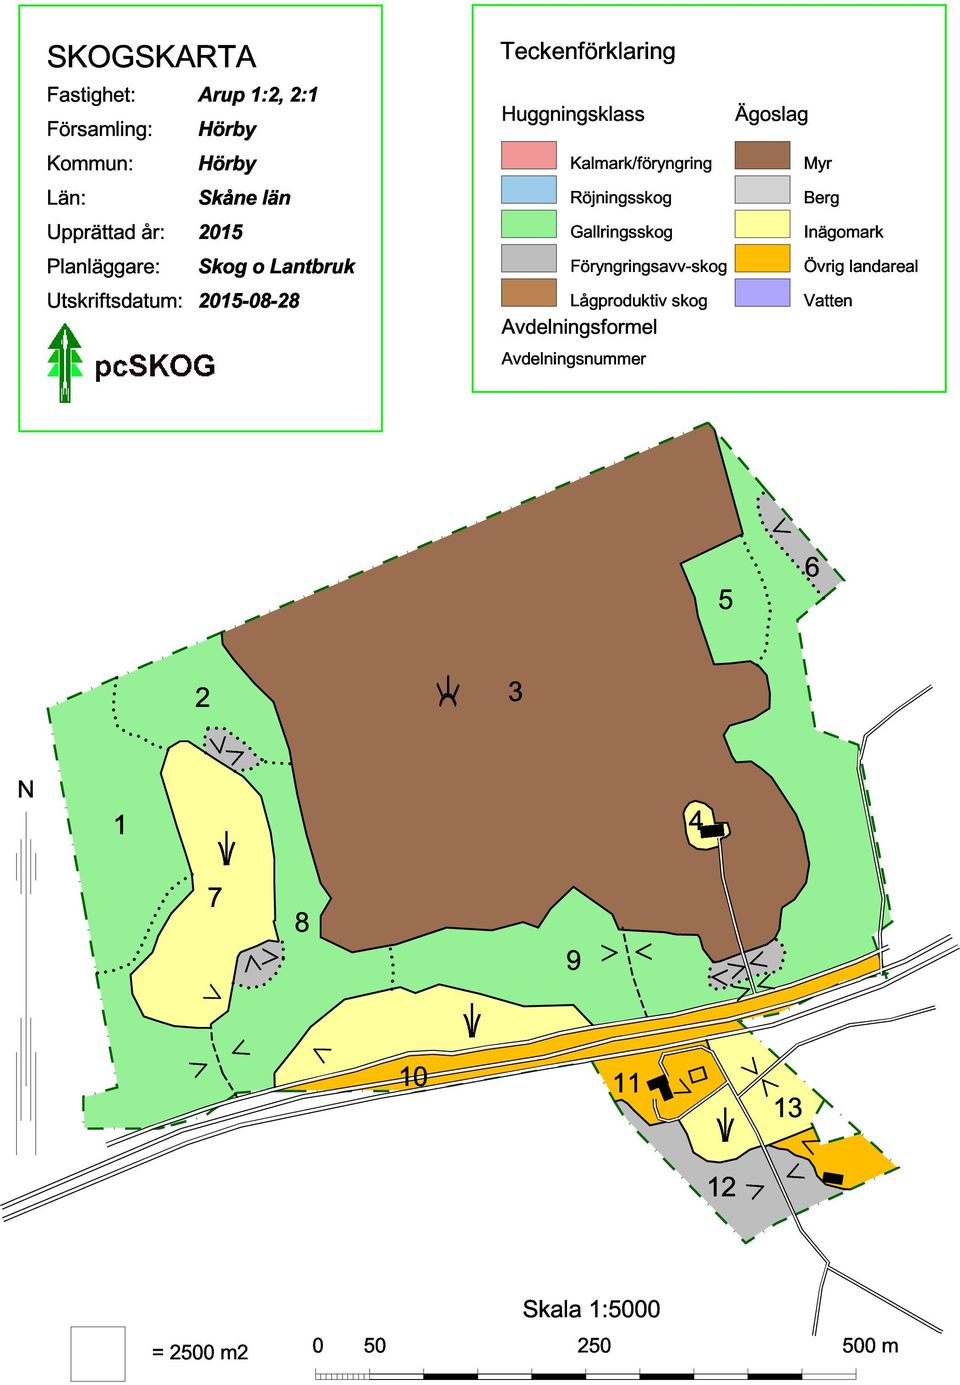 Röjningsskog Gallringsskog Föryngringsavv-skog Lågproduktiv skog Avdelningsformel Avdelningsnummer Ägoslag Myr